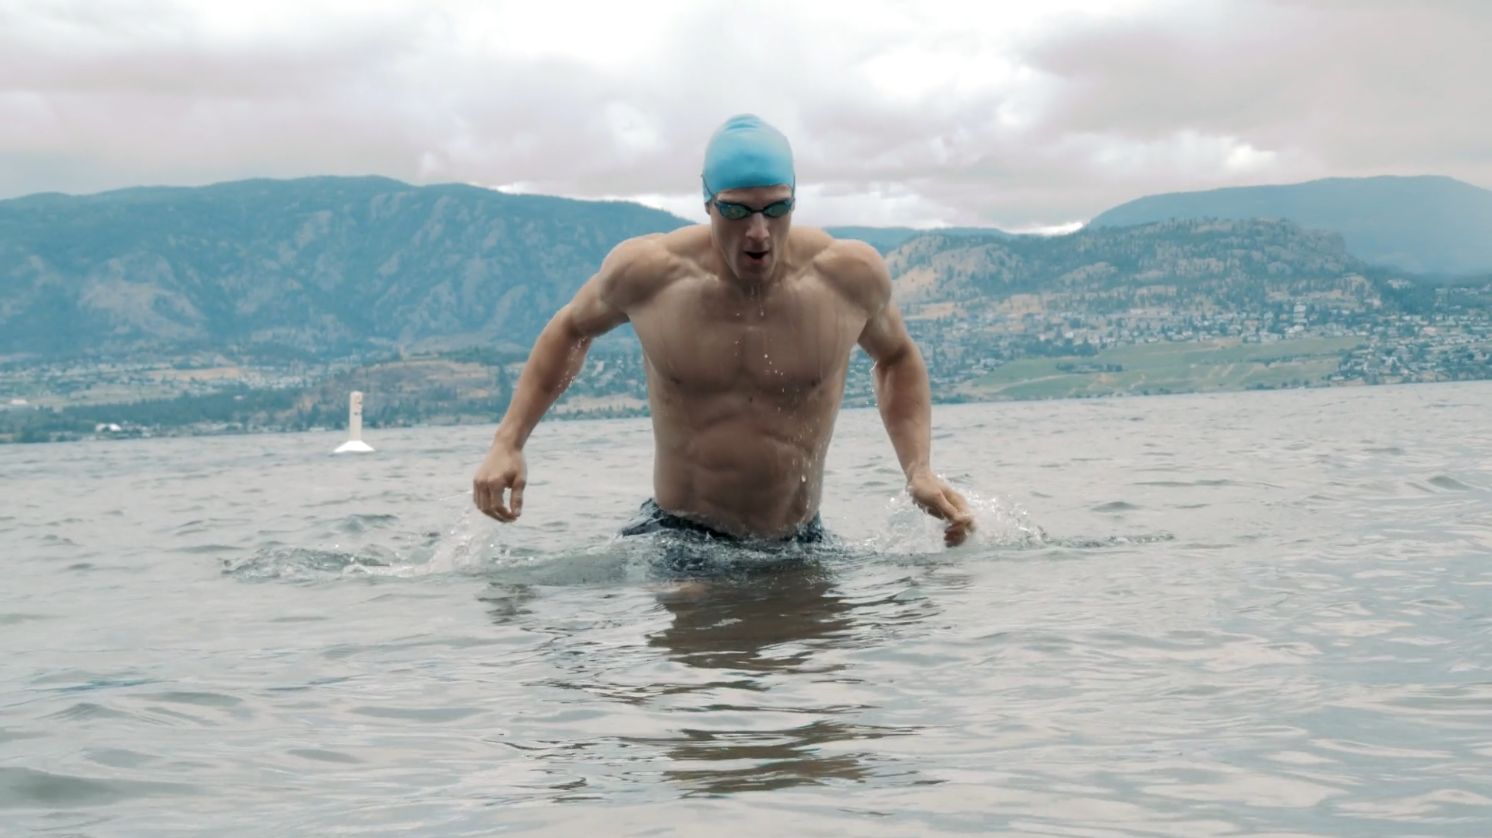 Brent Swimming in Okanagan Lake